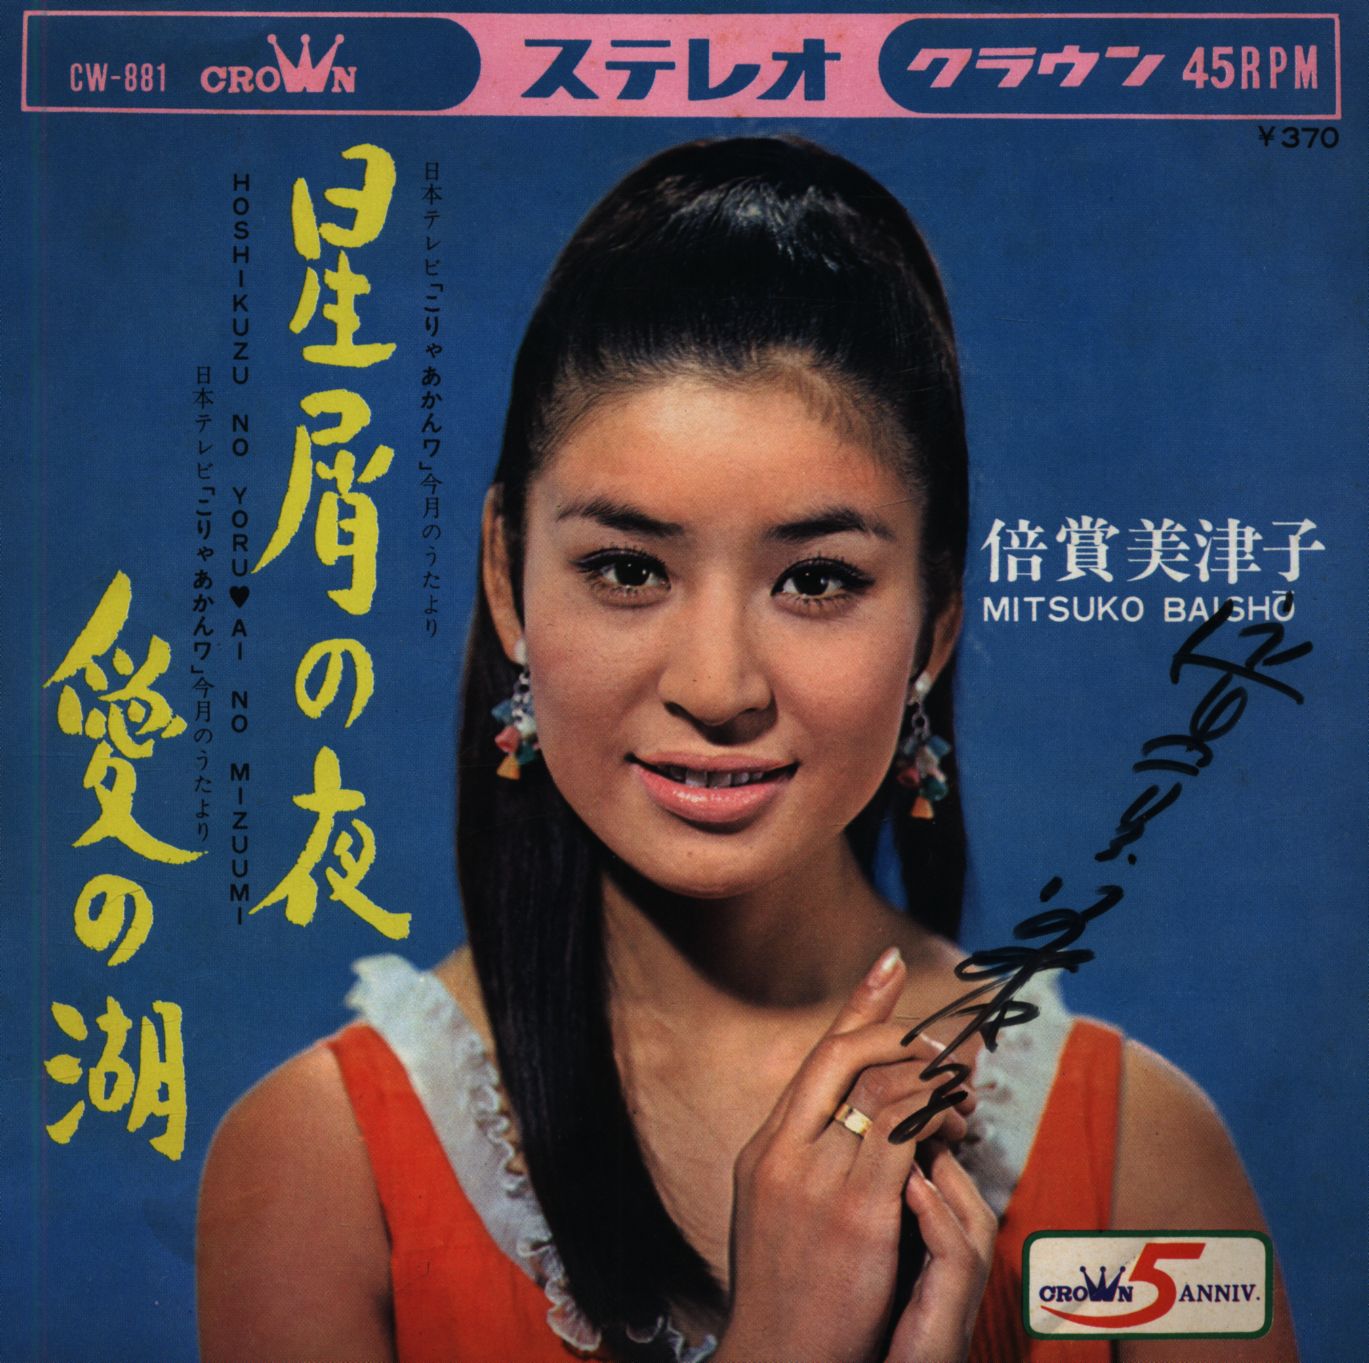  Mitsuko nackt Baisho 